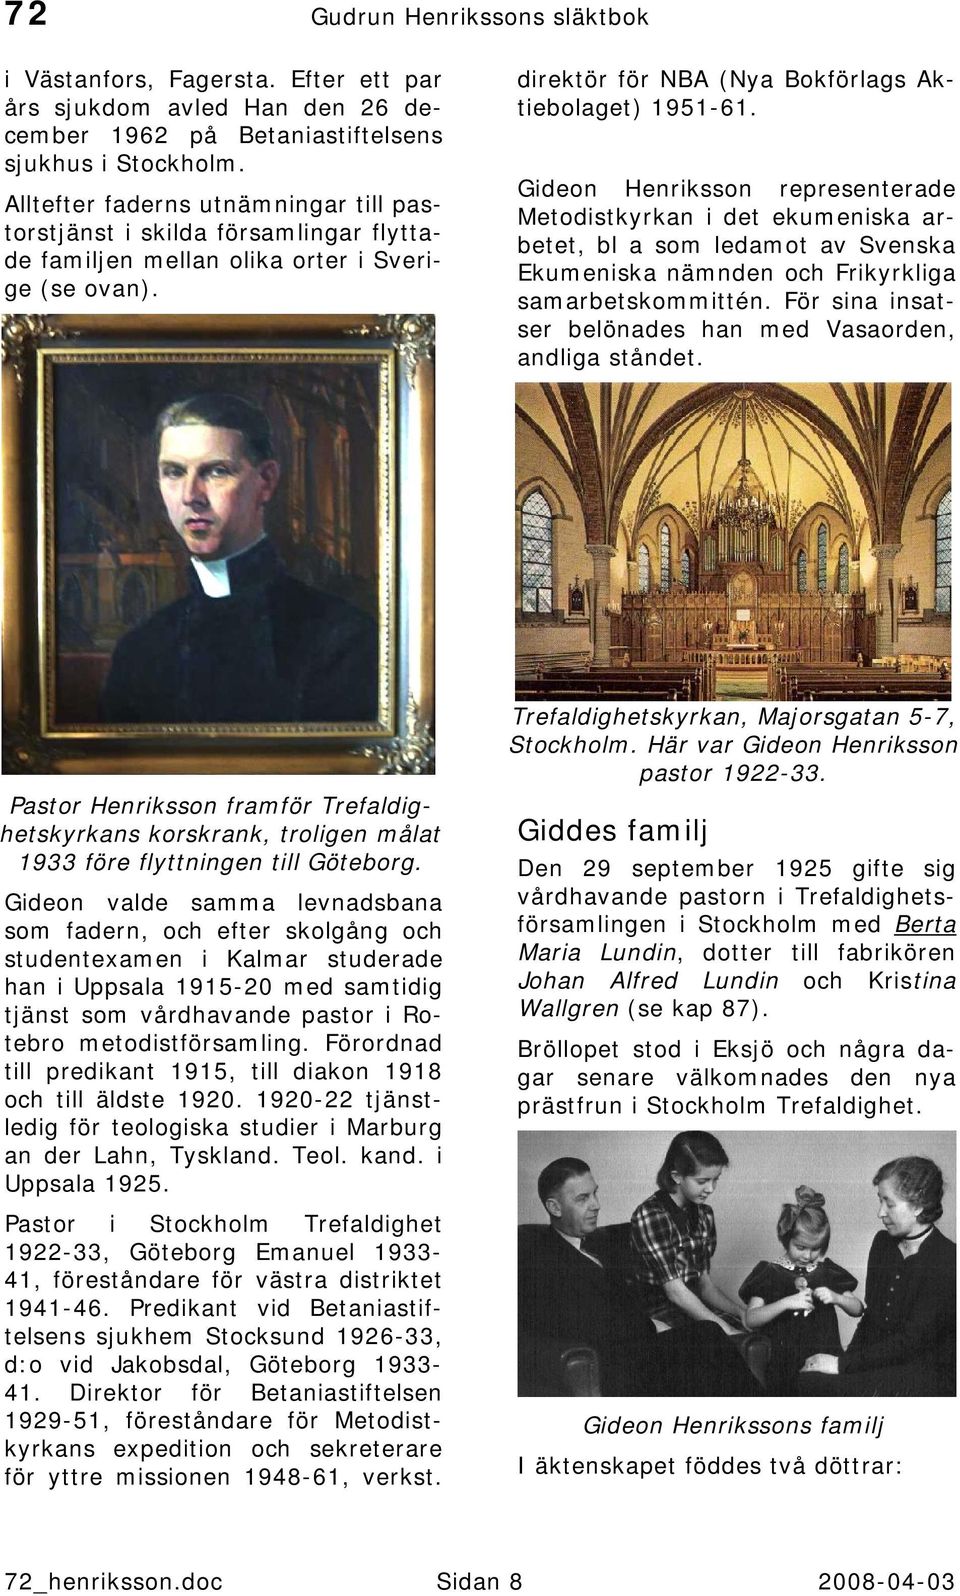 Gideon Henriksson representerade Metodistkyrkan i det ekumeniska arbetet, bl a som ledamot av Svenska Ekumeniska nämnden och Frikyrkliga samarbetskommittén.